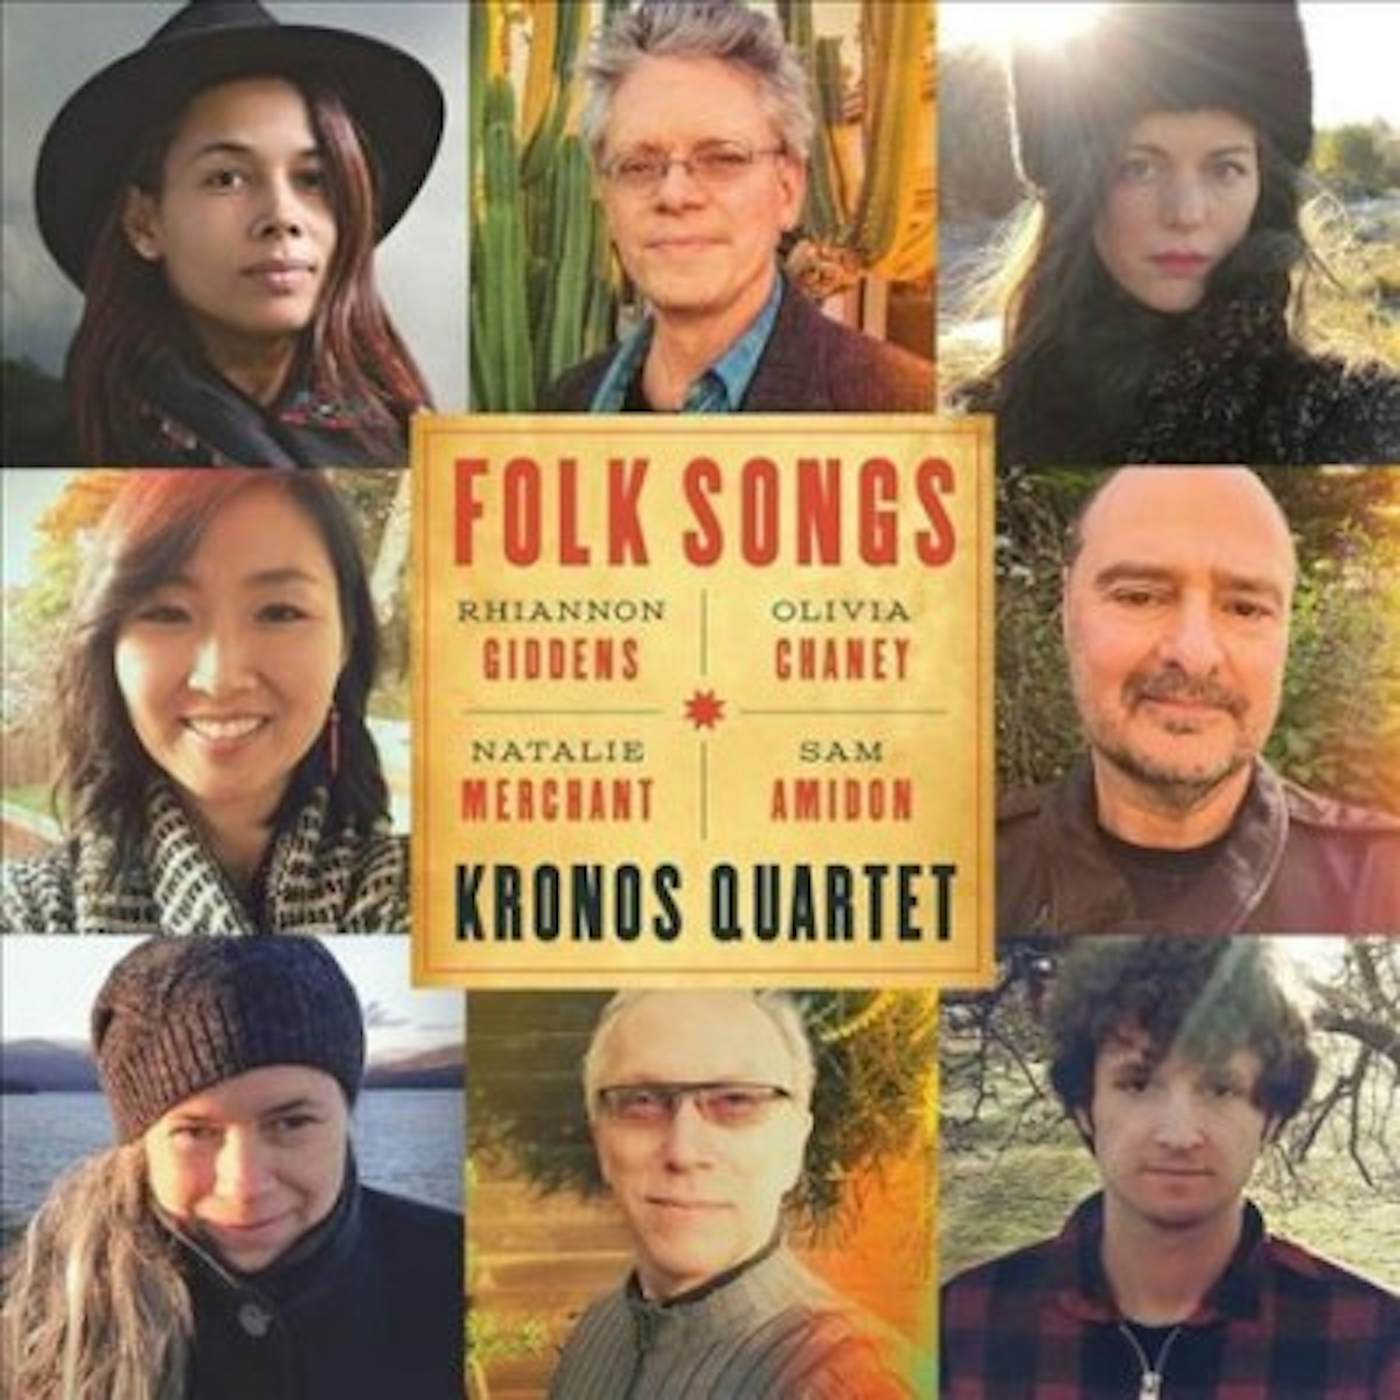 Kronos Quartet Folk Songs CD